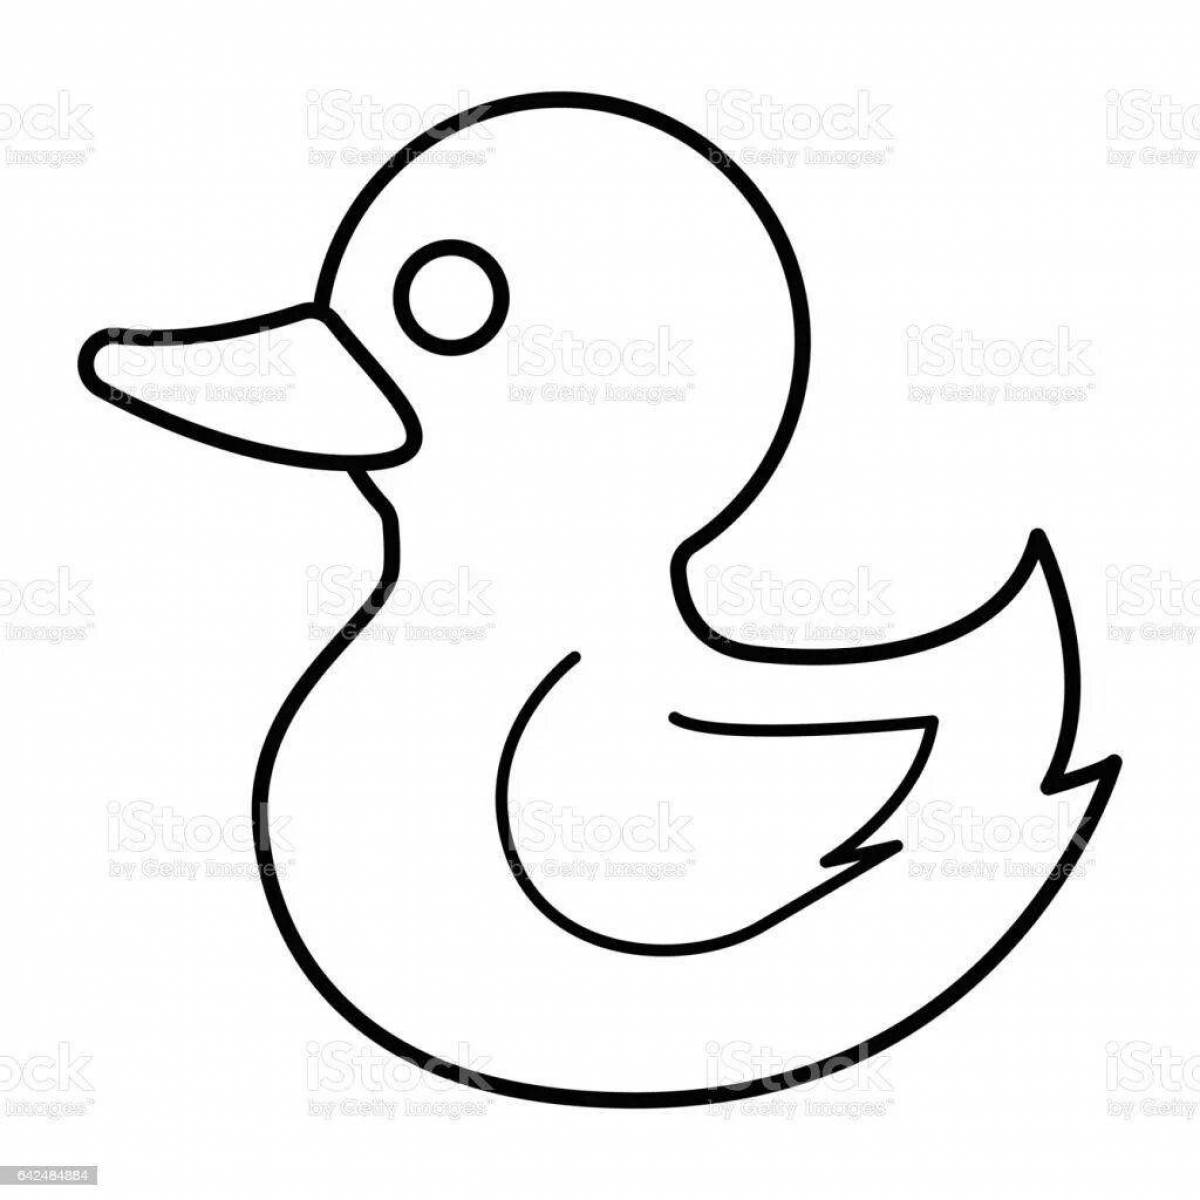 Colorful Dymkovo duck stencil